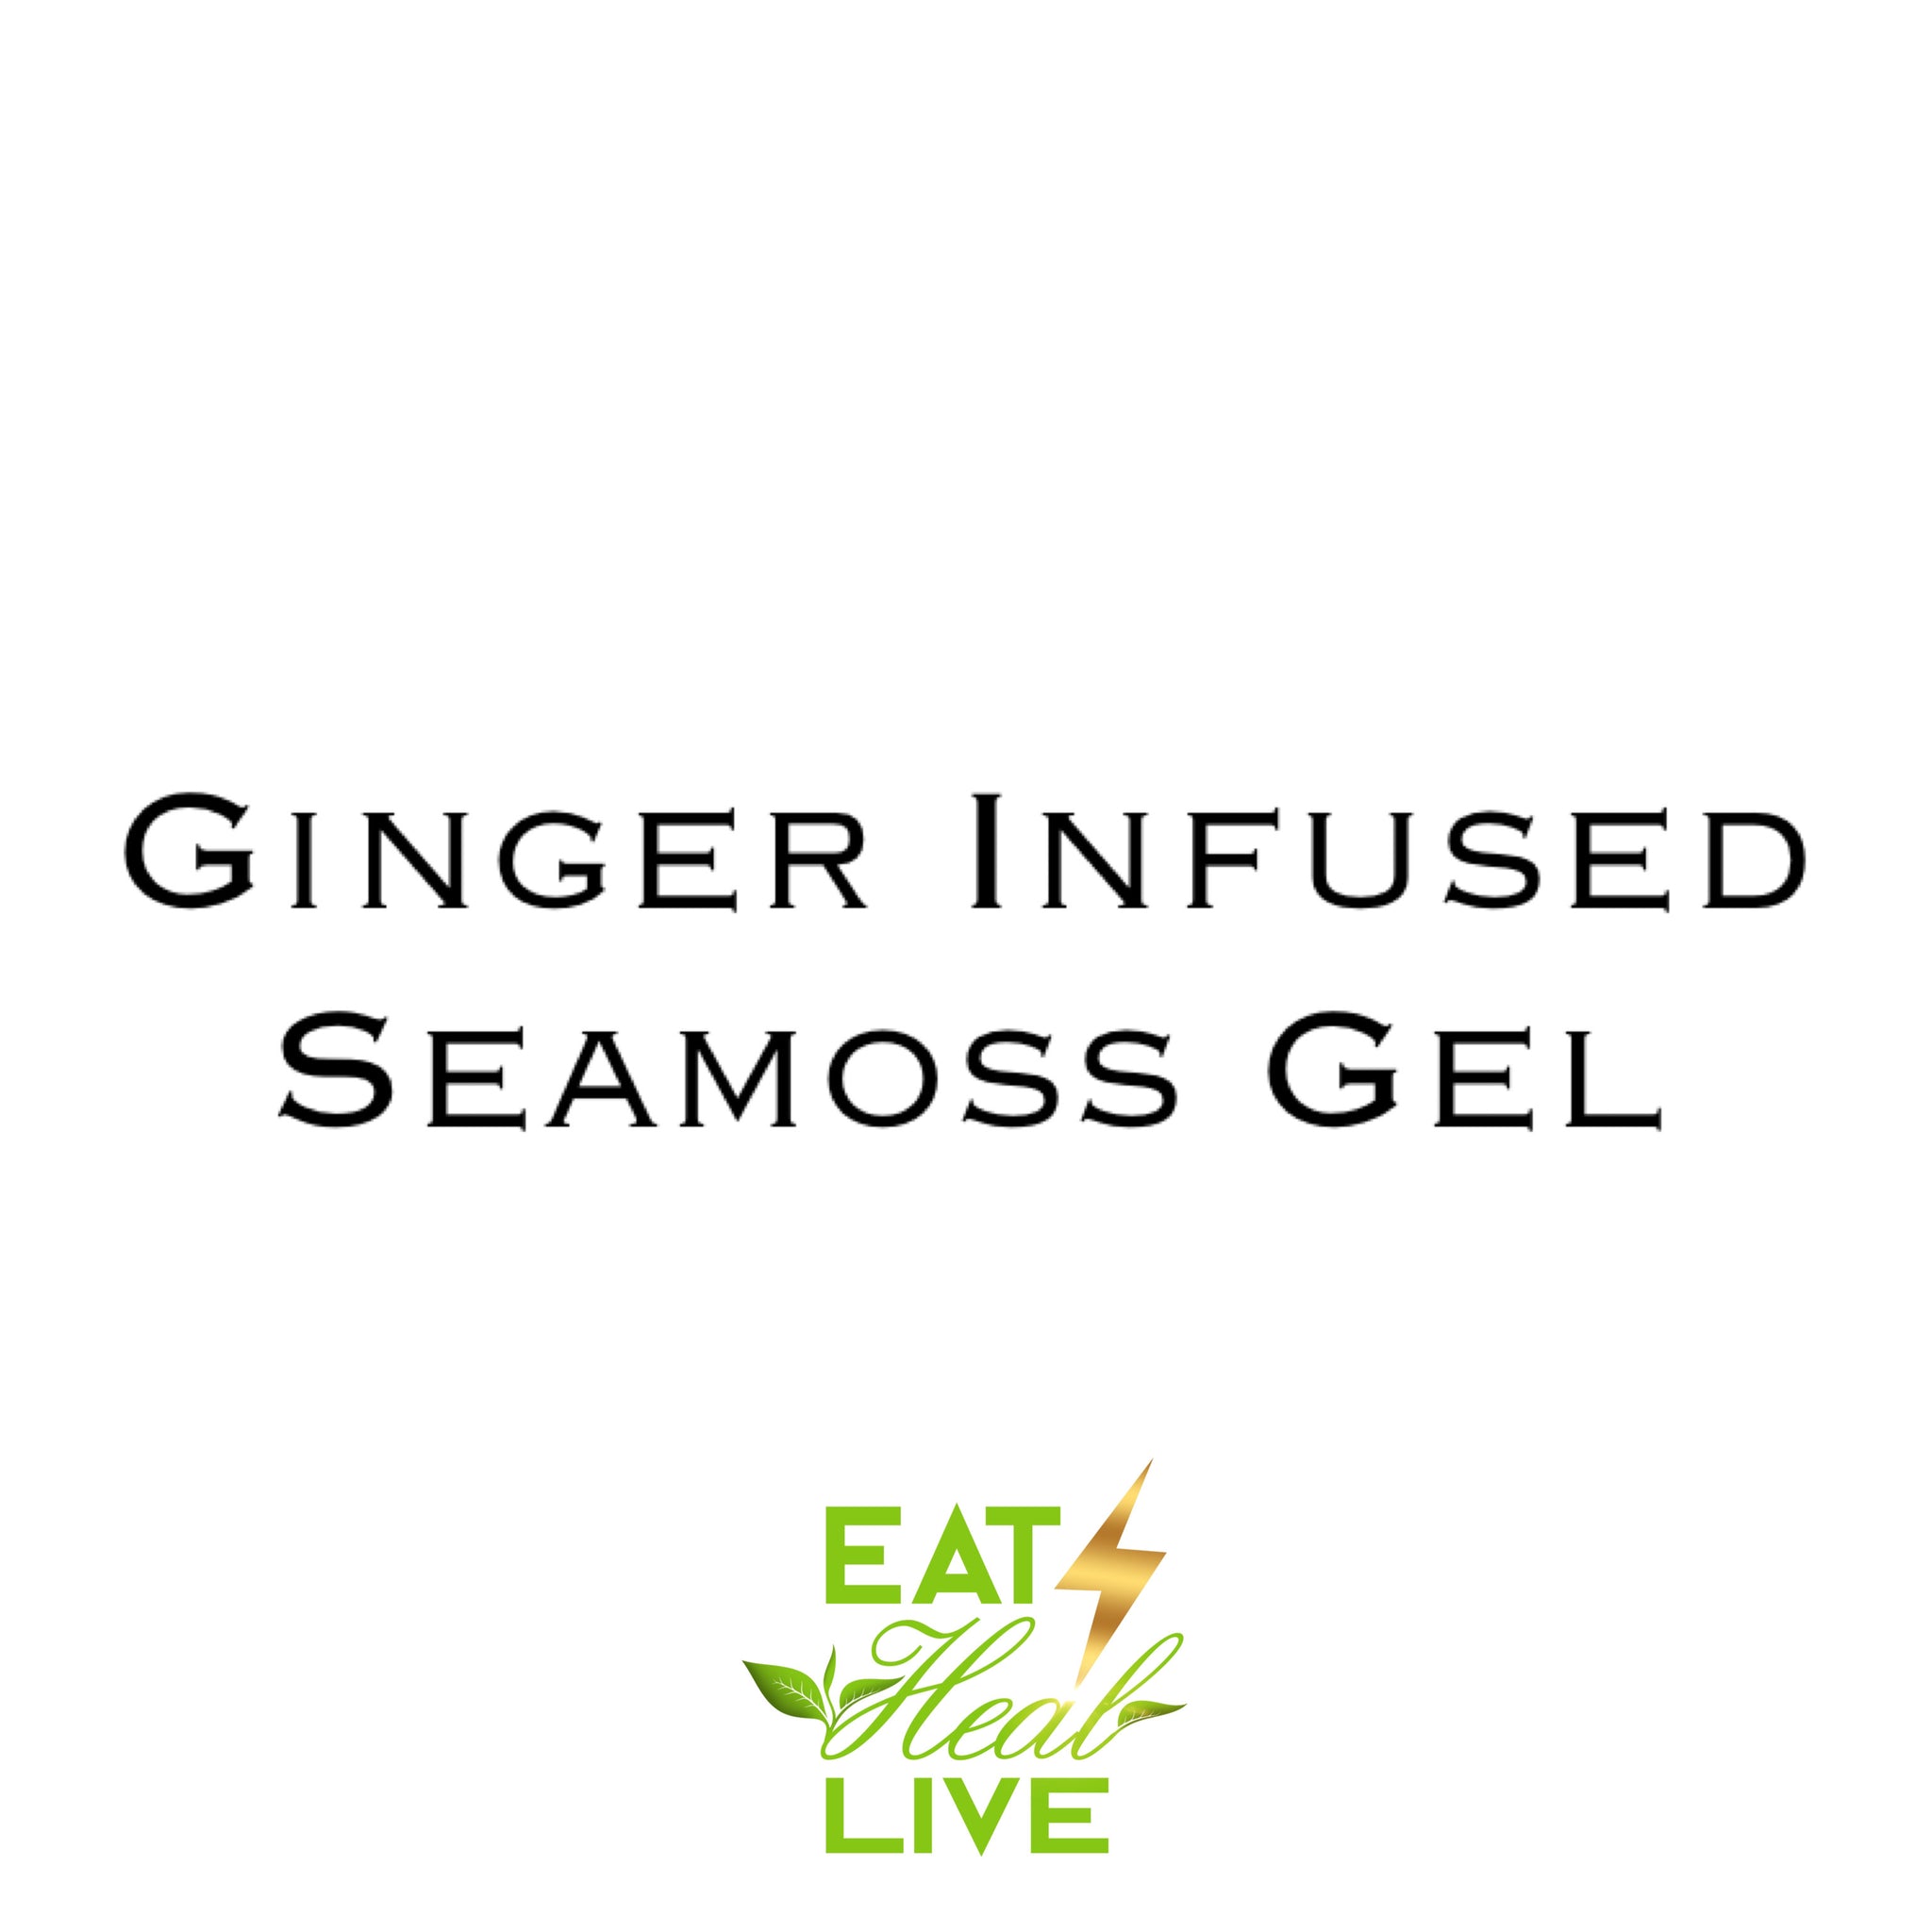 Order at EATHEALIVE.COM Ginger infused Sea moss Gel